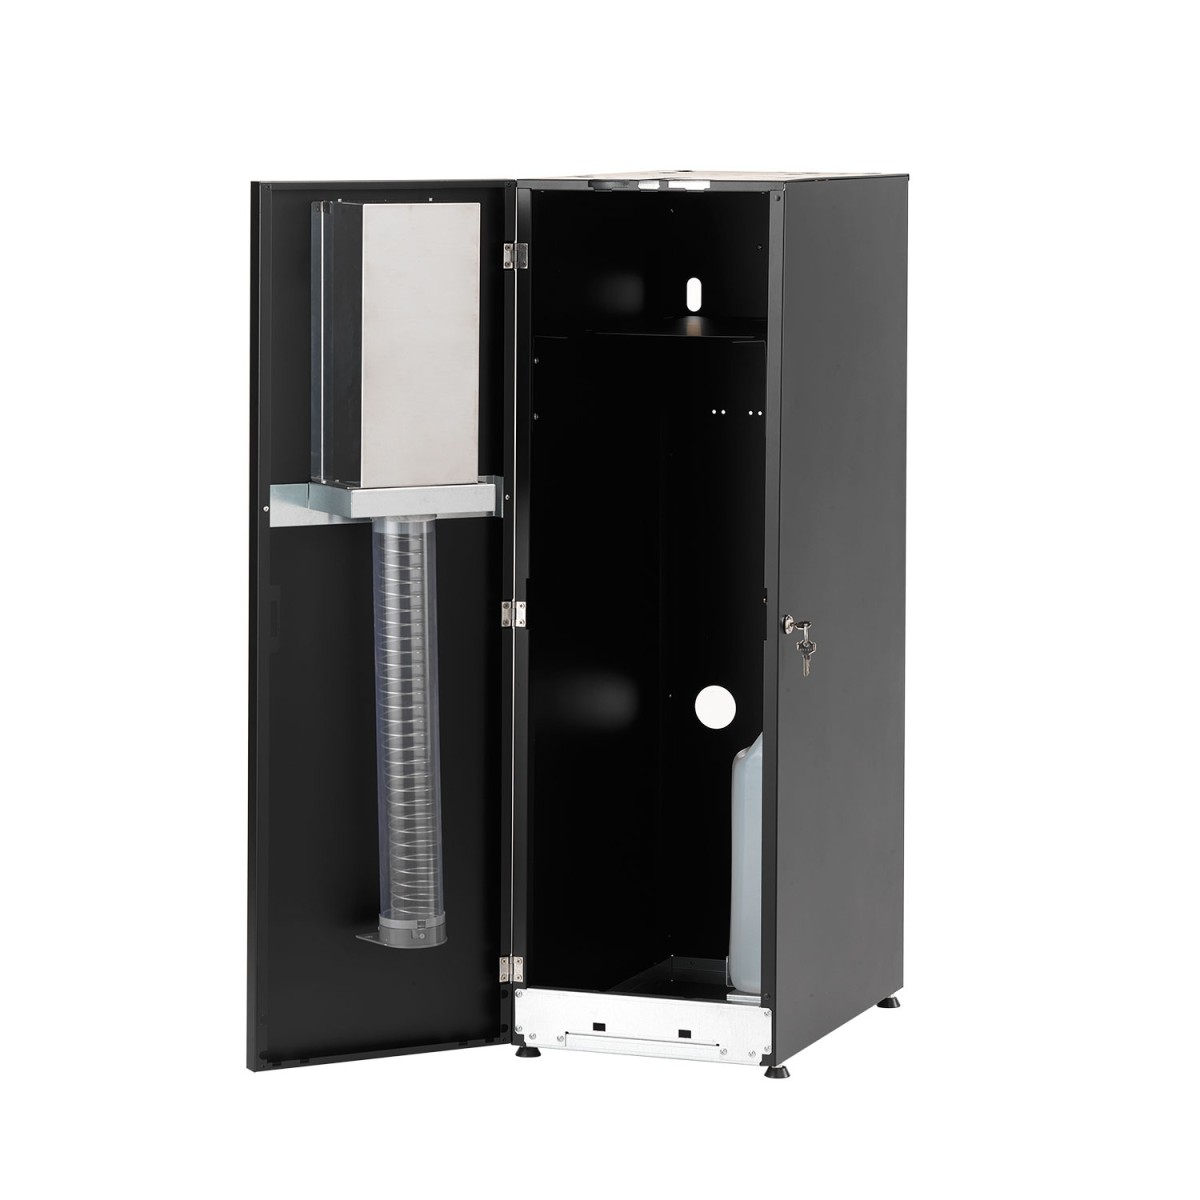 Refrigeratore per uffici Hi-Class Top 45 Ib Ach Wg